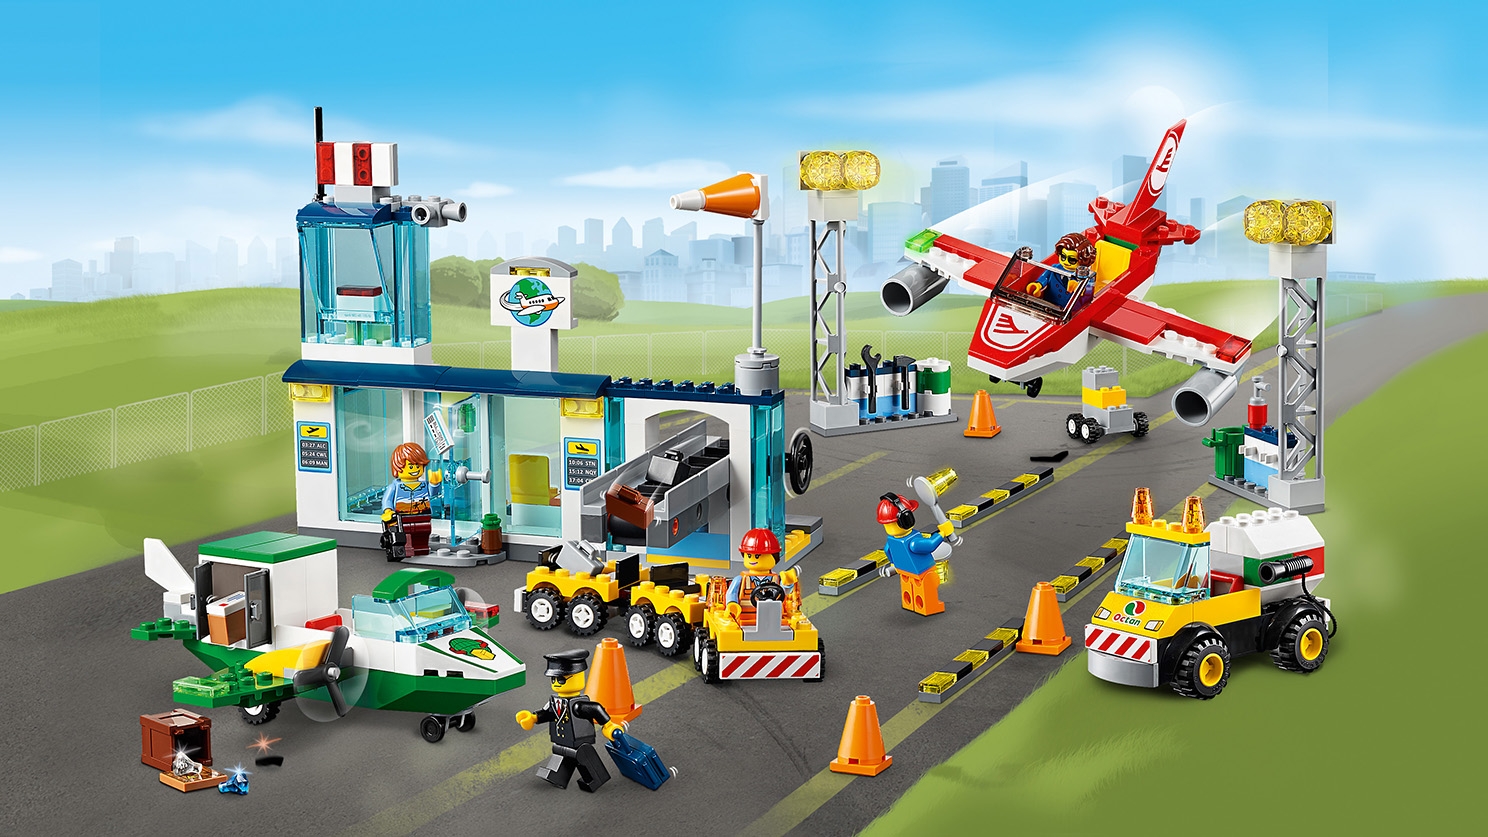 レゴシティ空港 10764 - レゴ®シティ セット - LEGO.comキッズ